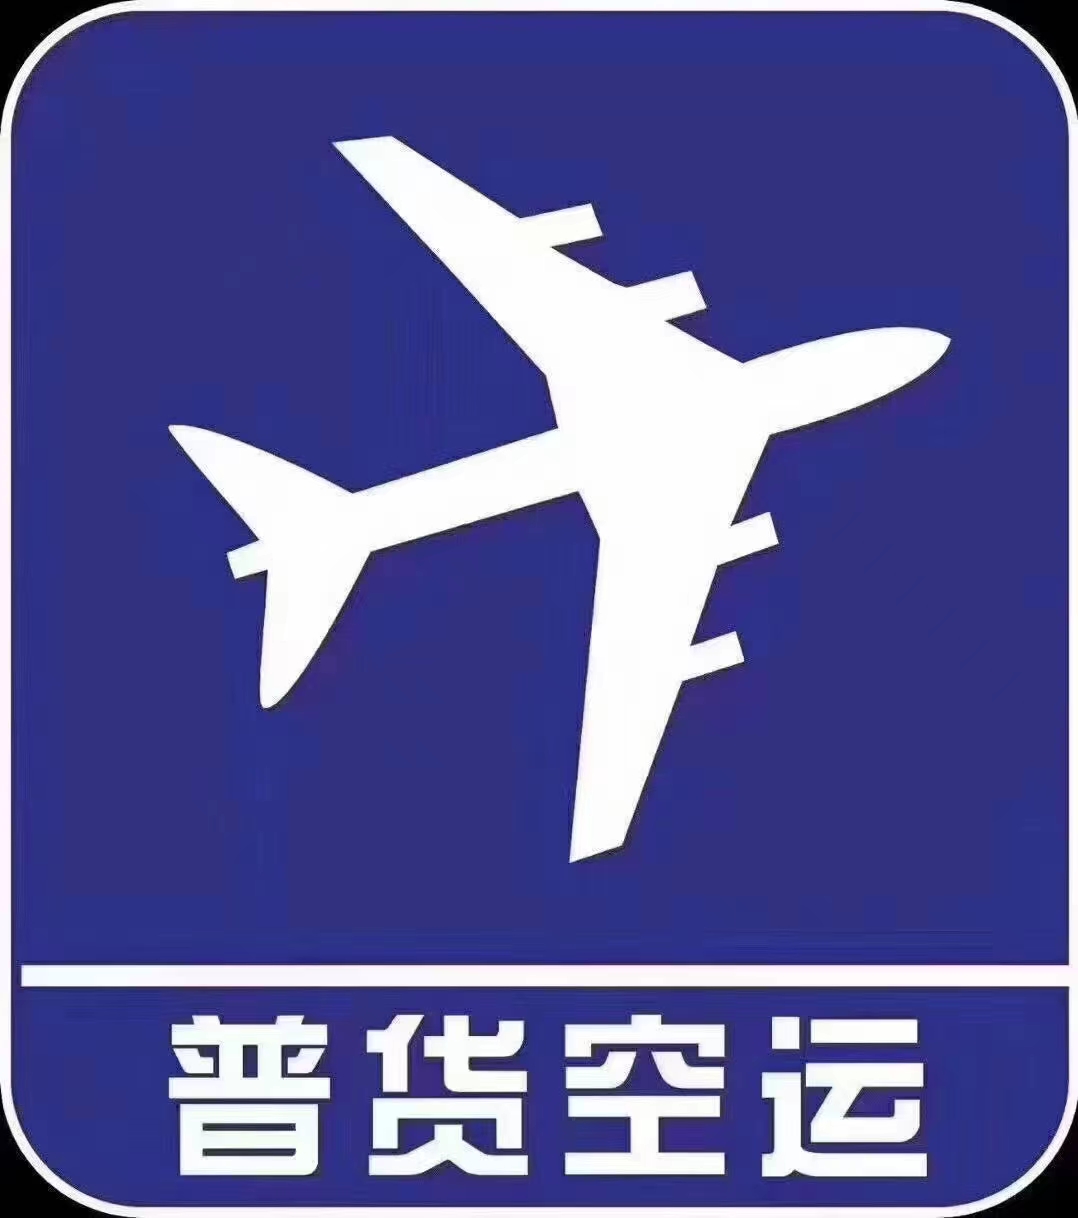 武汉天河机场货运部 航空托运 物流空运到全国